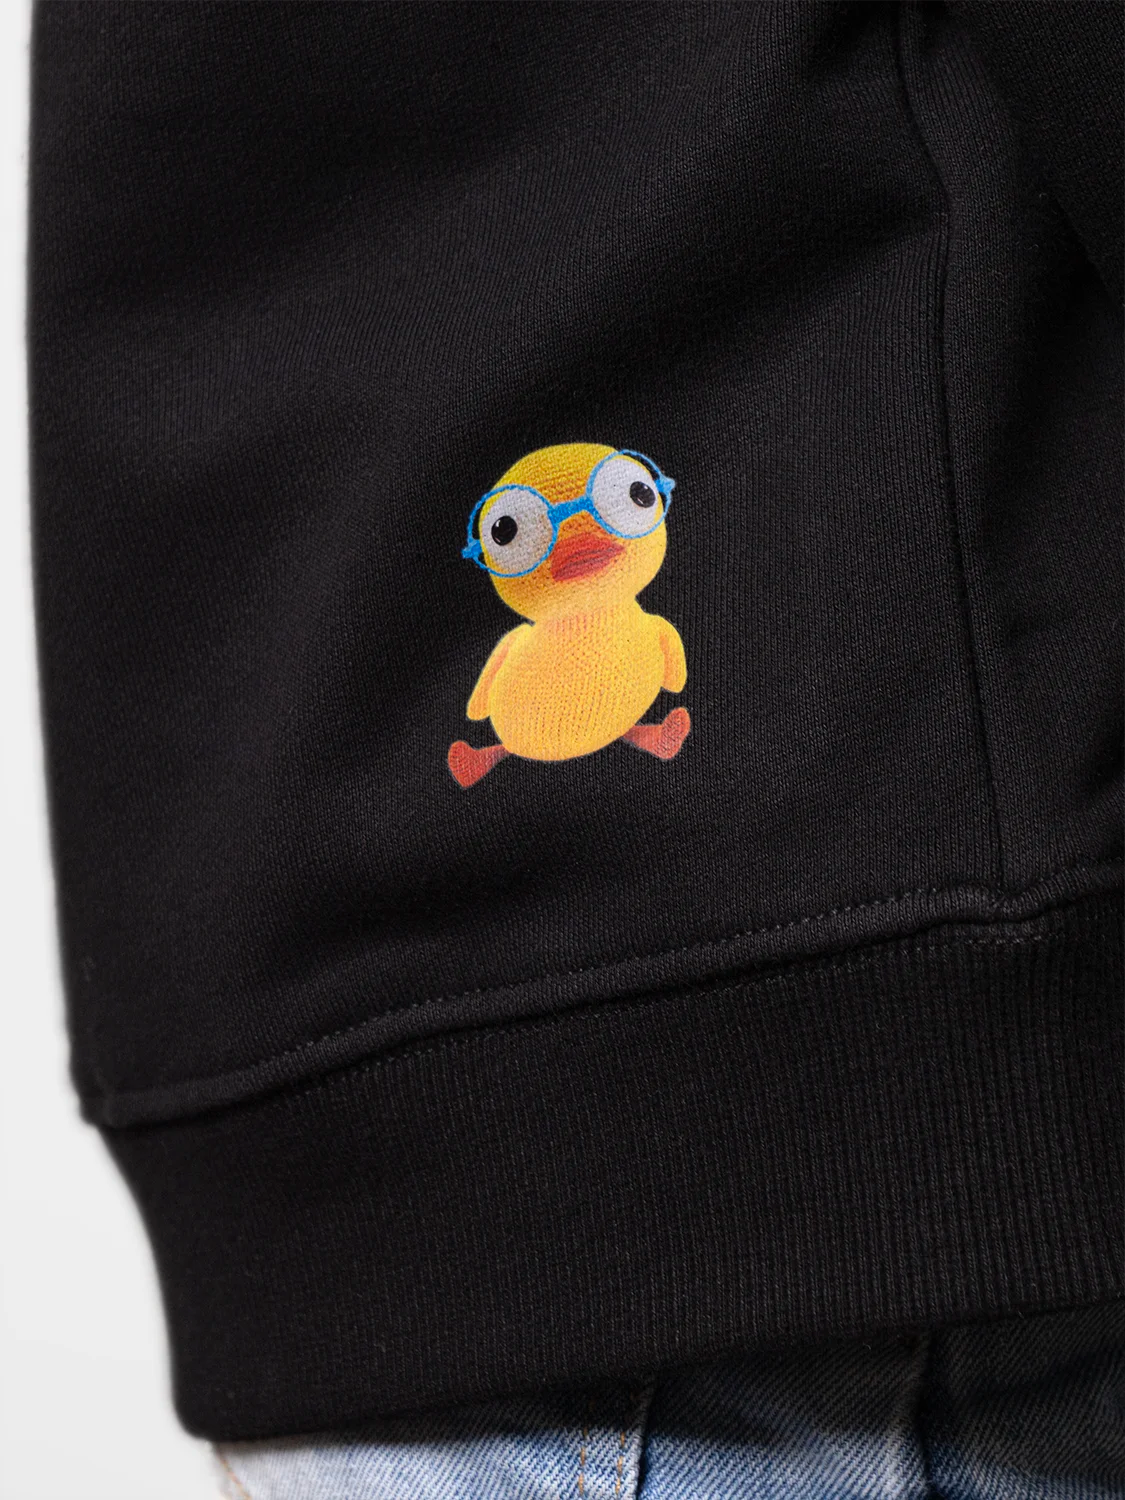 The Duckling Duck Perfect Black Sweatshirt